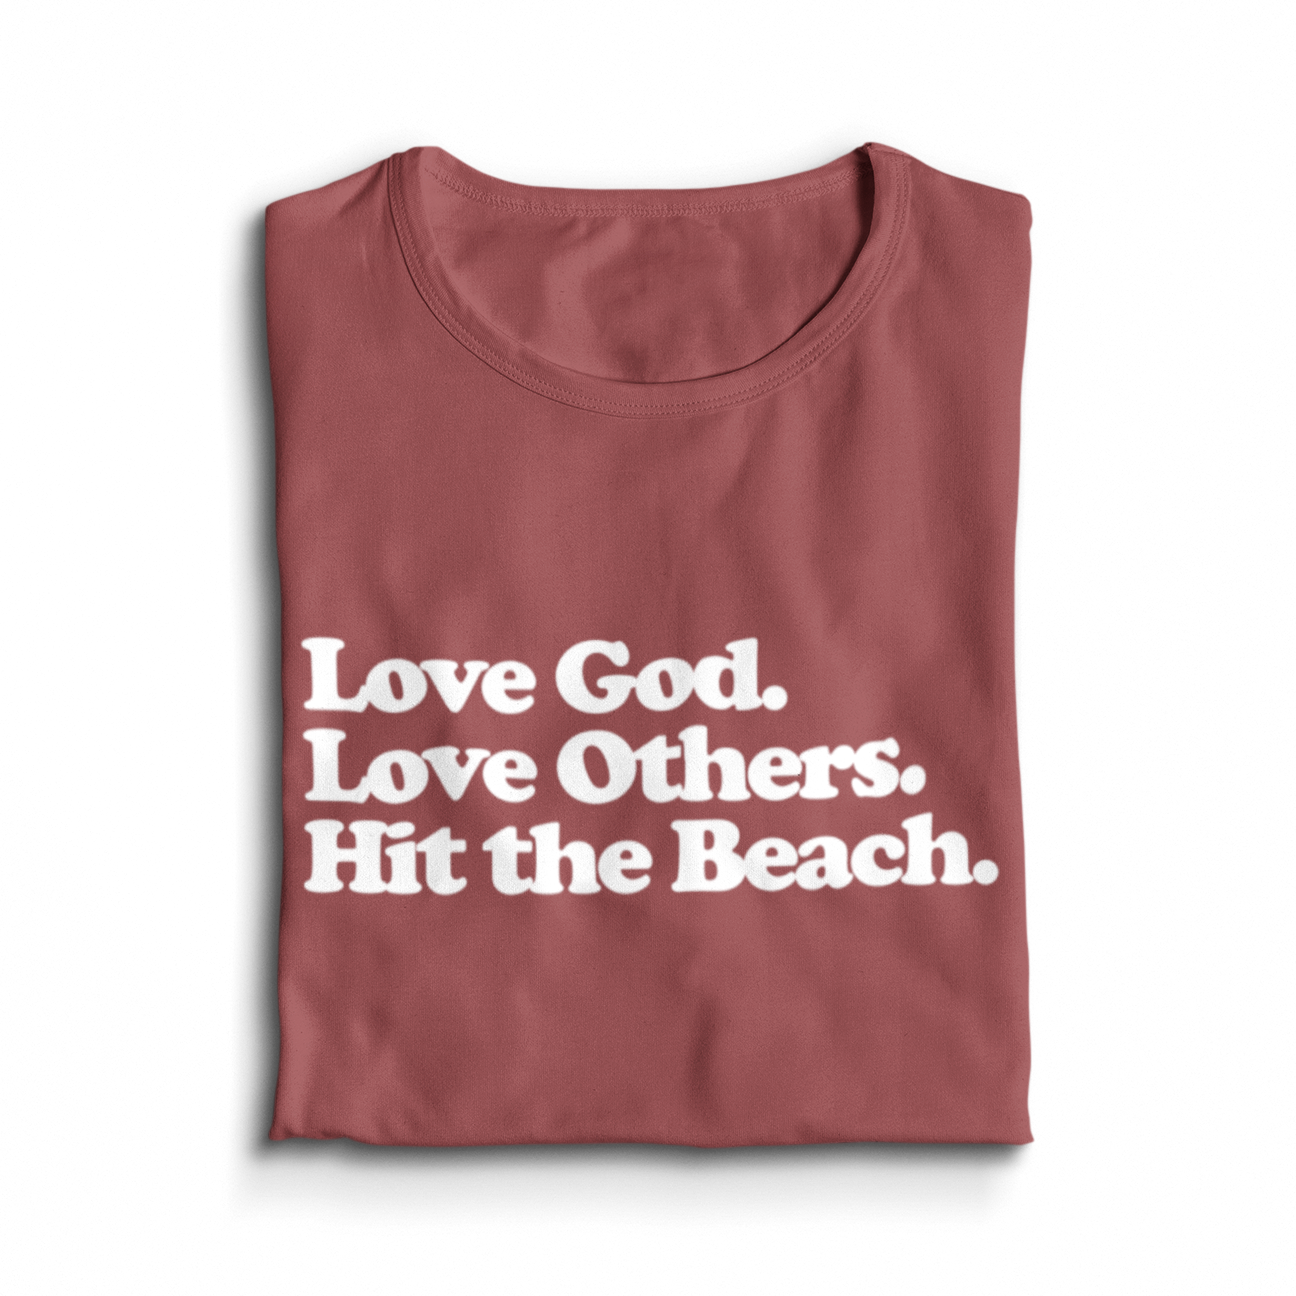 Hit the Beach T-shirt